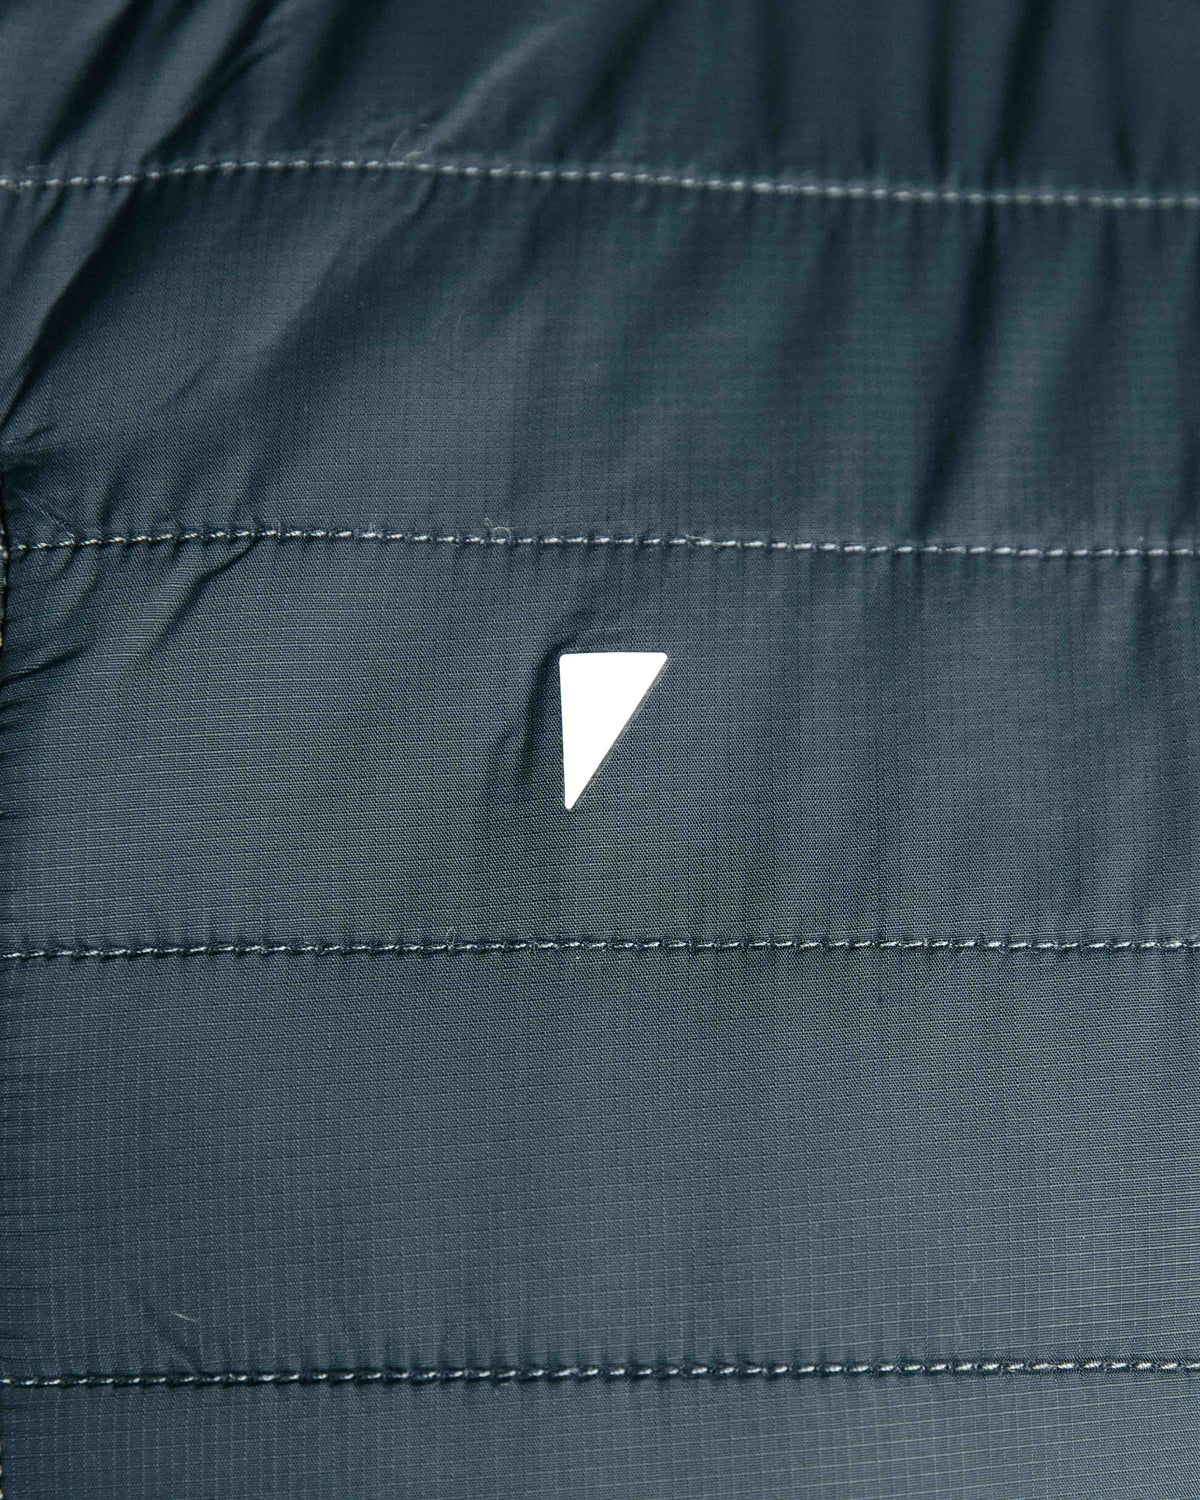 Primo Golf Dark Gray Hybrid Jacket Logo